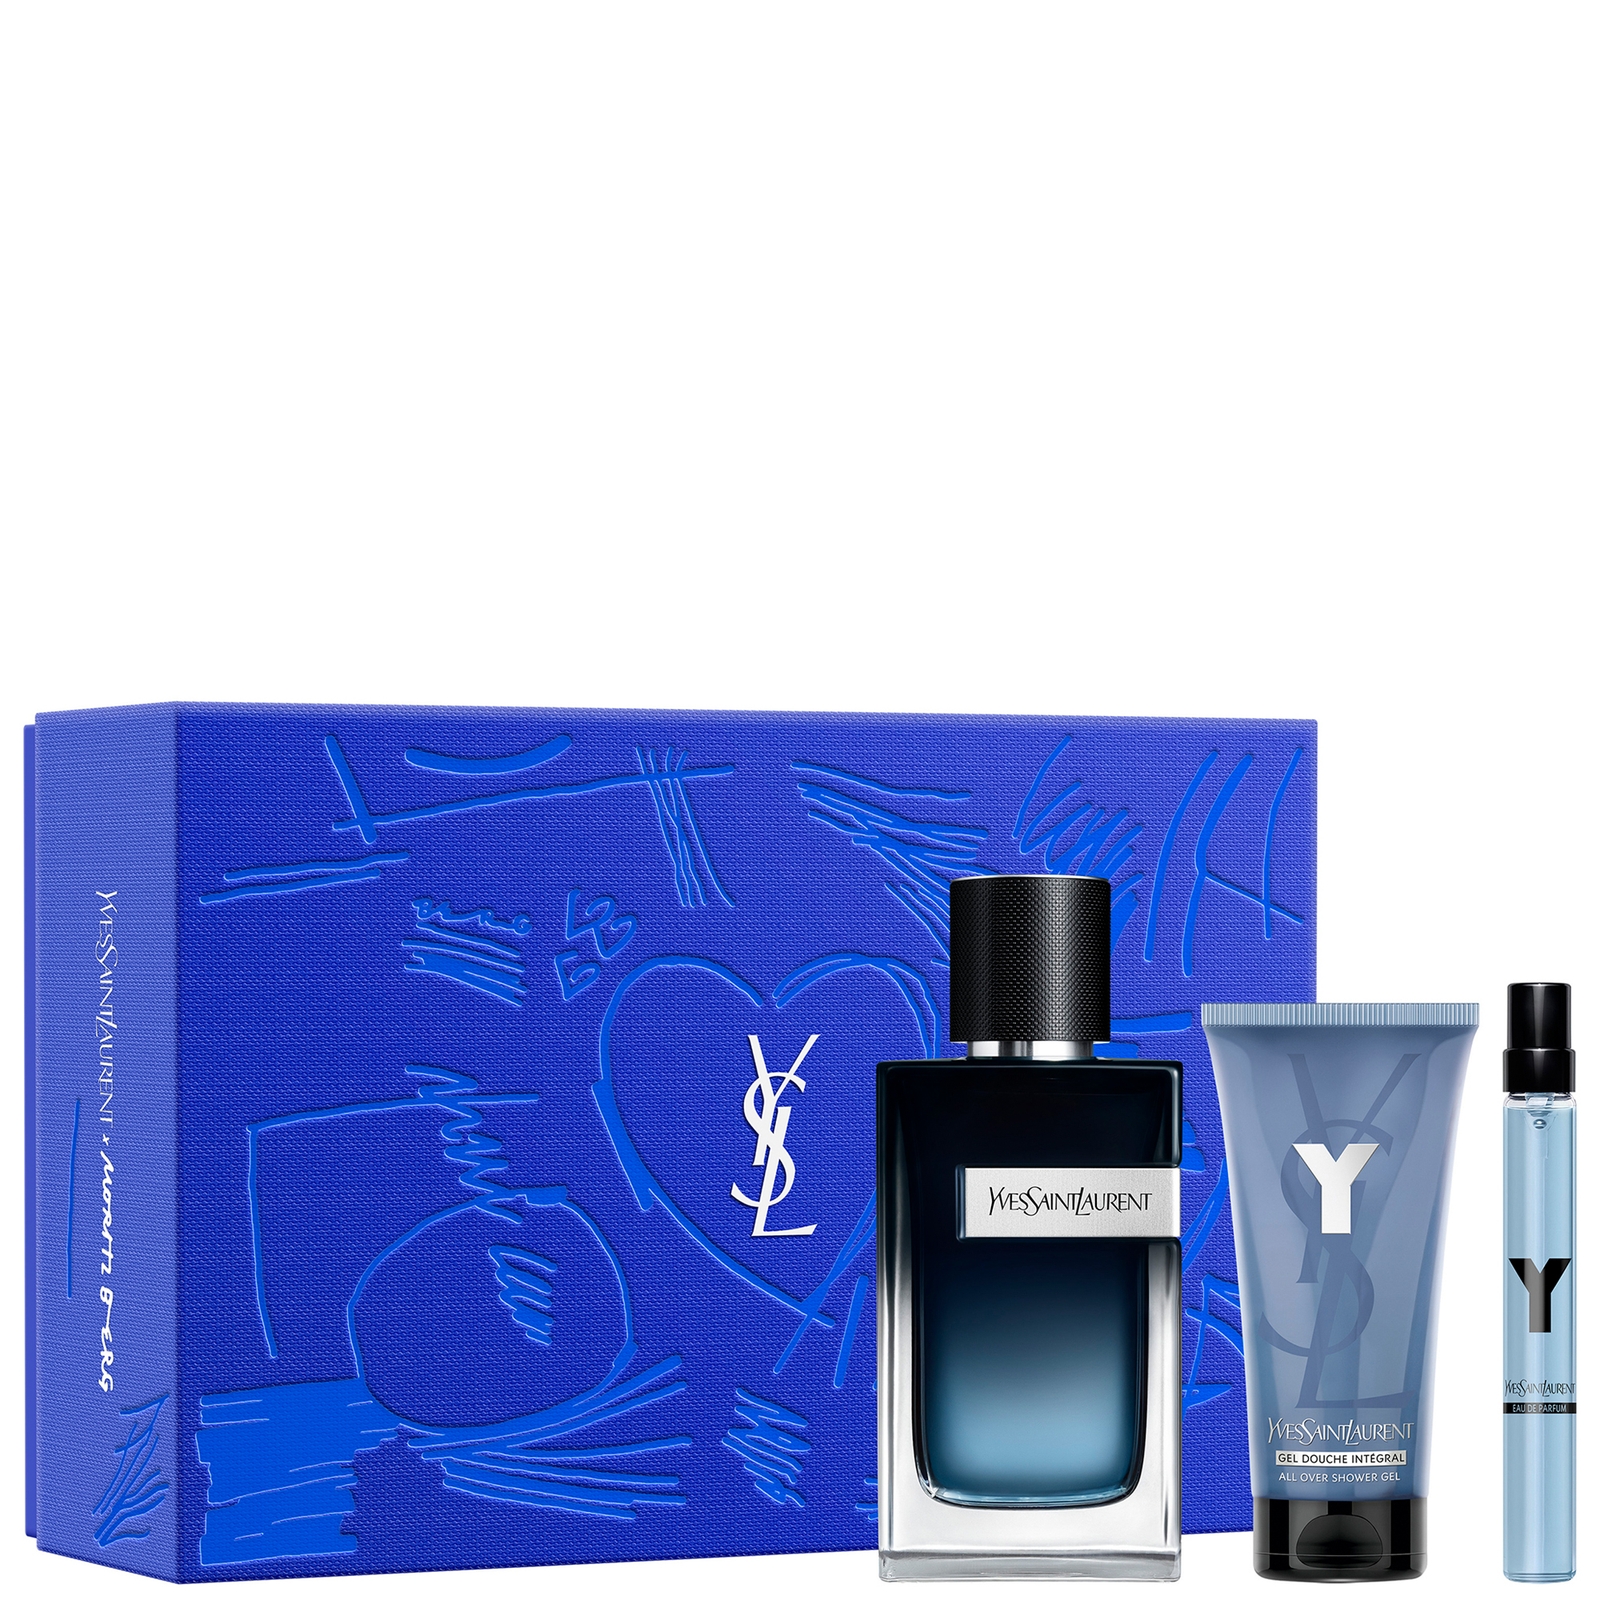 Photos - Women's Fragrance Yves Saint Laurent Y Eau de Parfum 100ml, Trial Size and 50ml Shower Gel S 